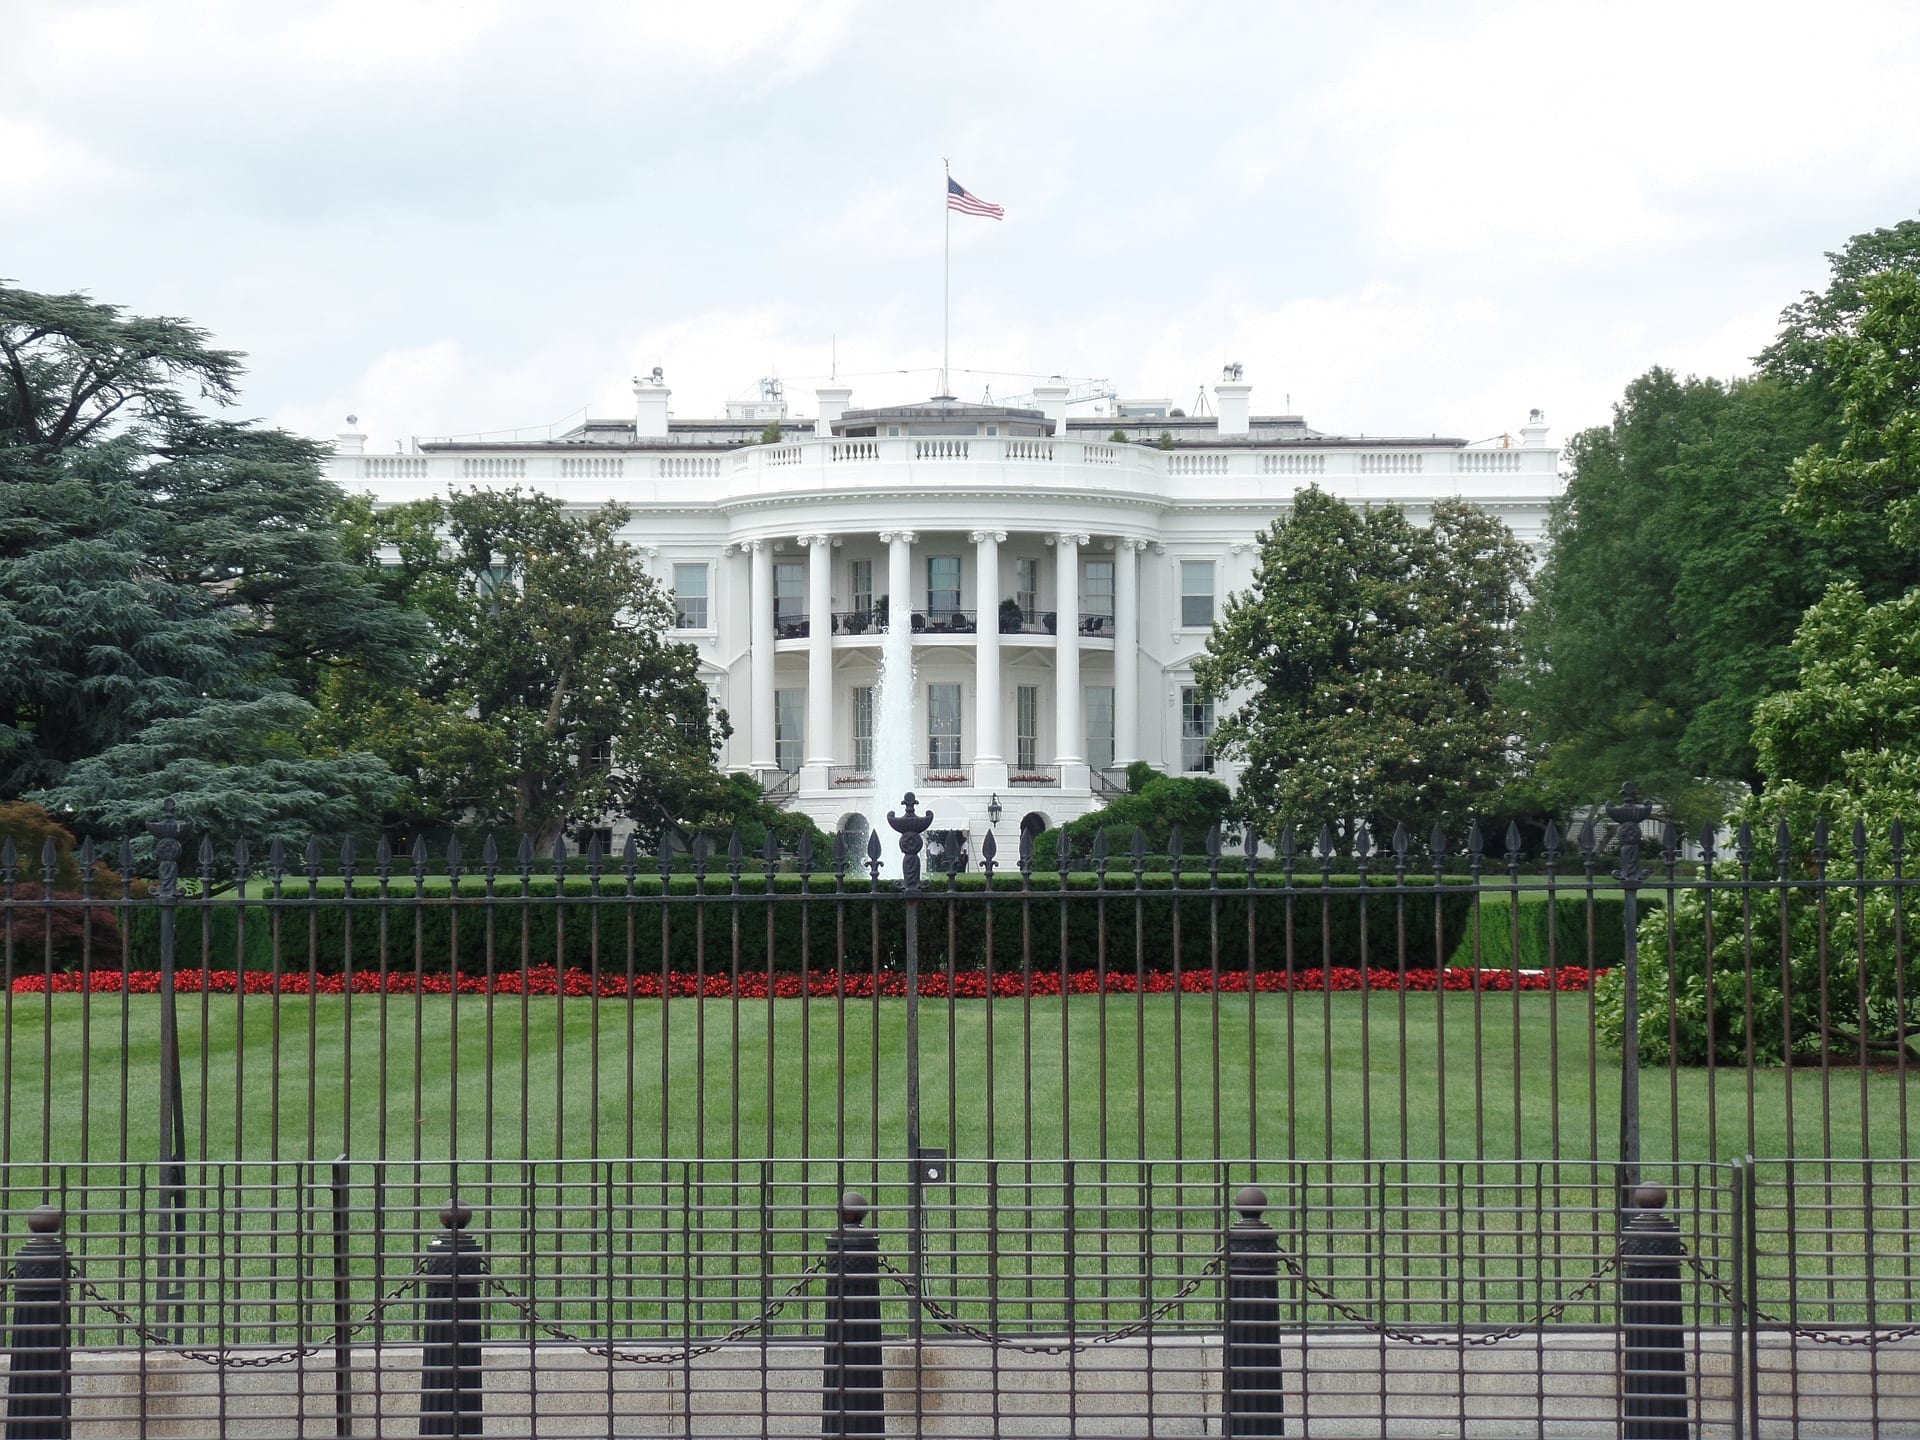 Exterior of the White House, Washington, USA